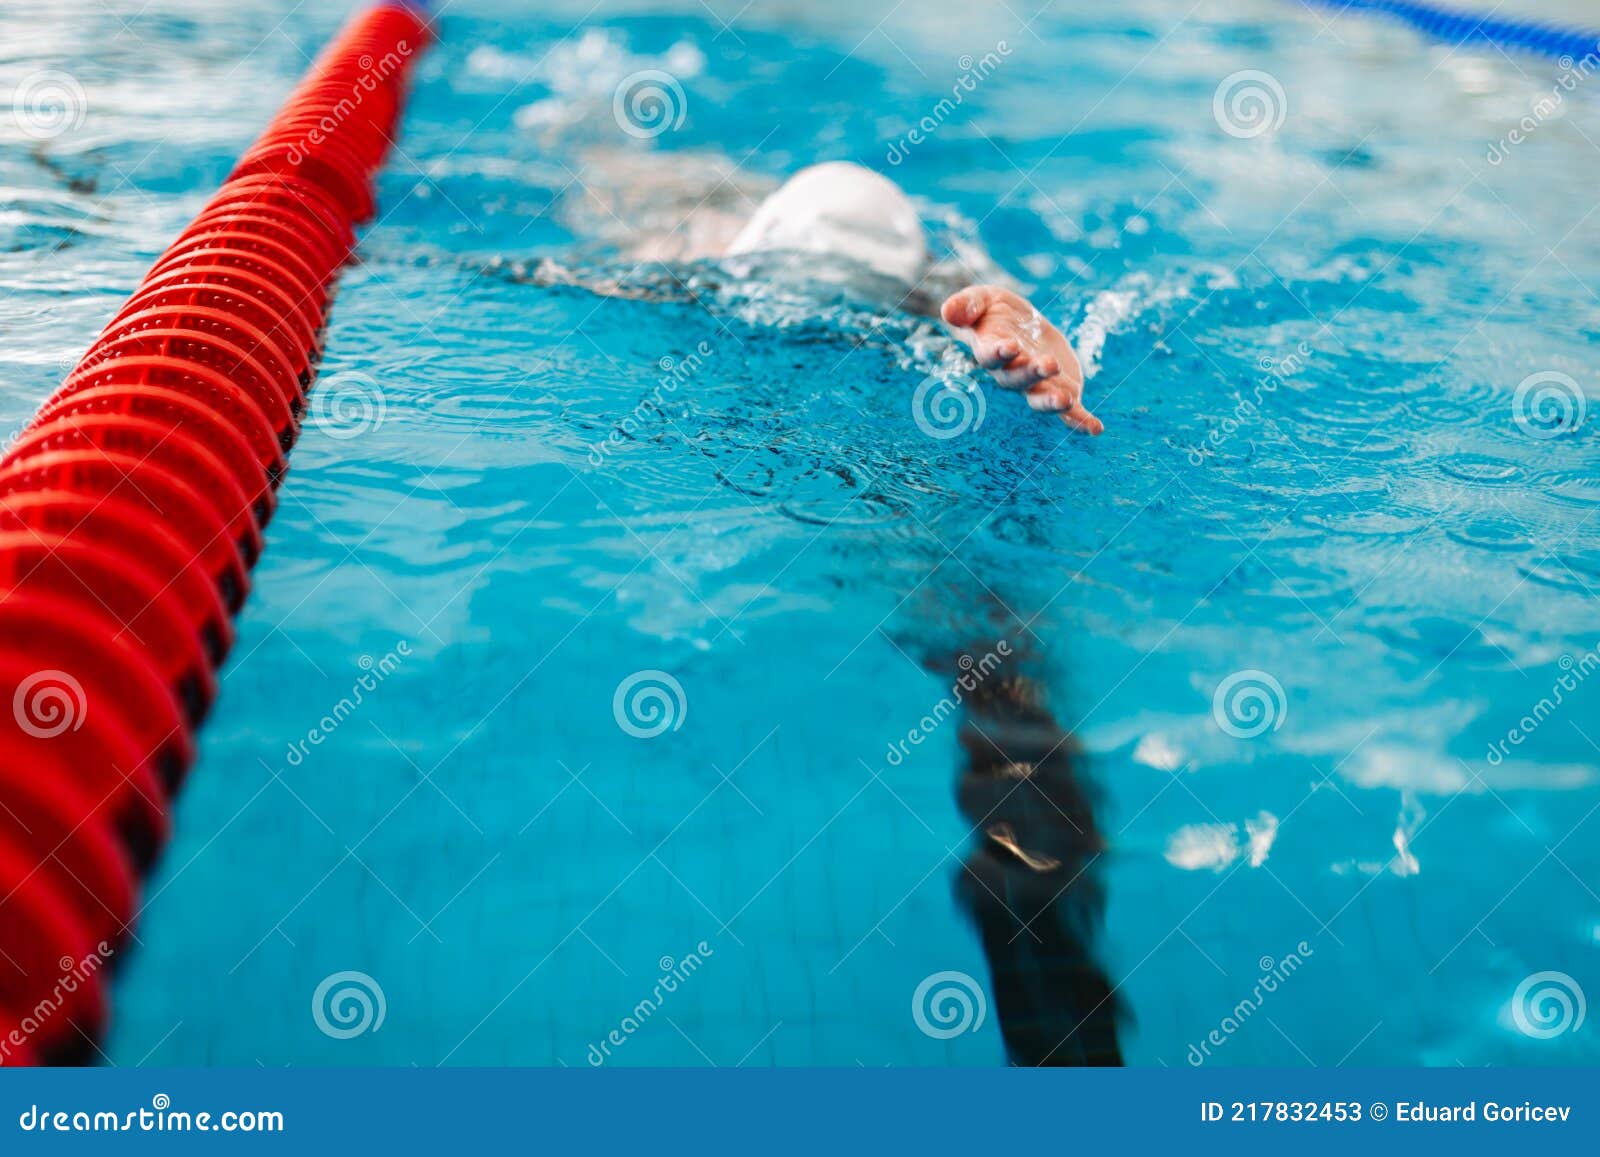 专业承接学校恒温游泳池建造施工 私人游泳池 游泳场专业游泳池-阿里巴巴